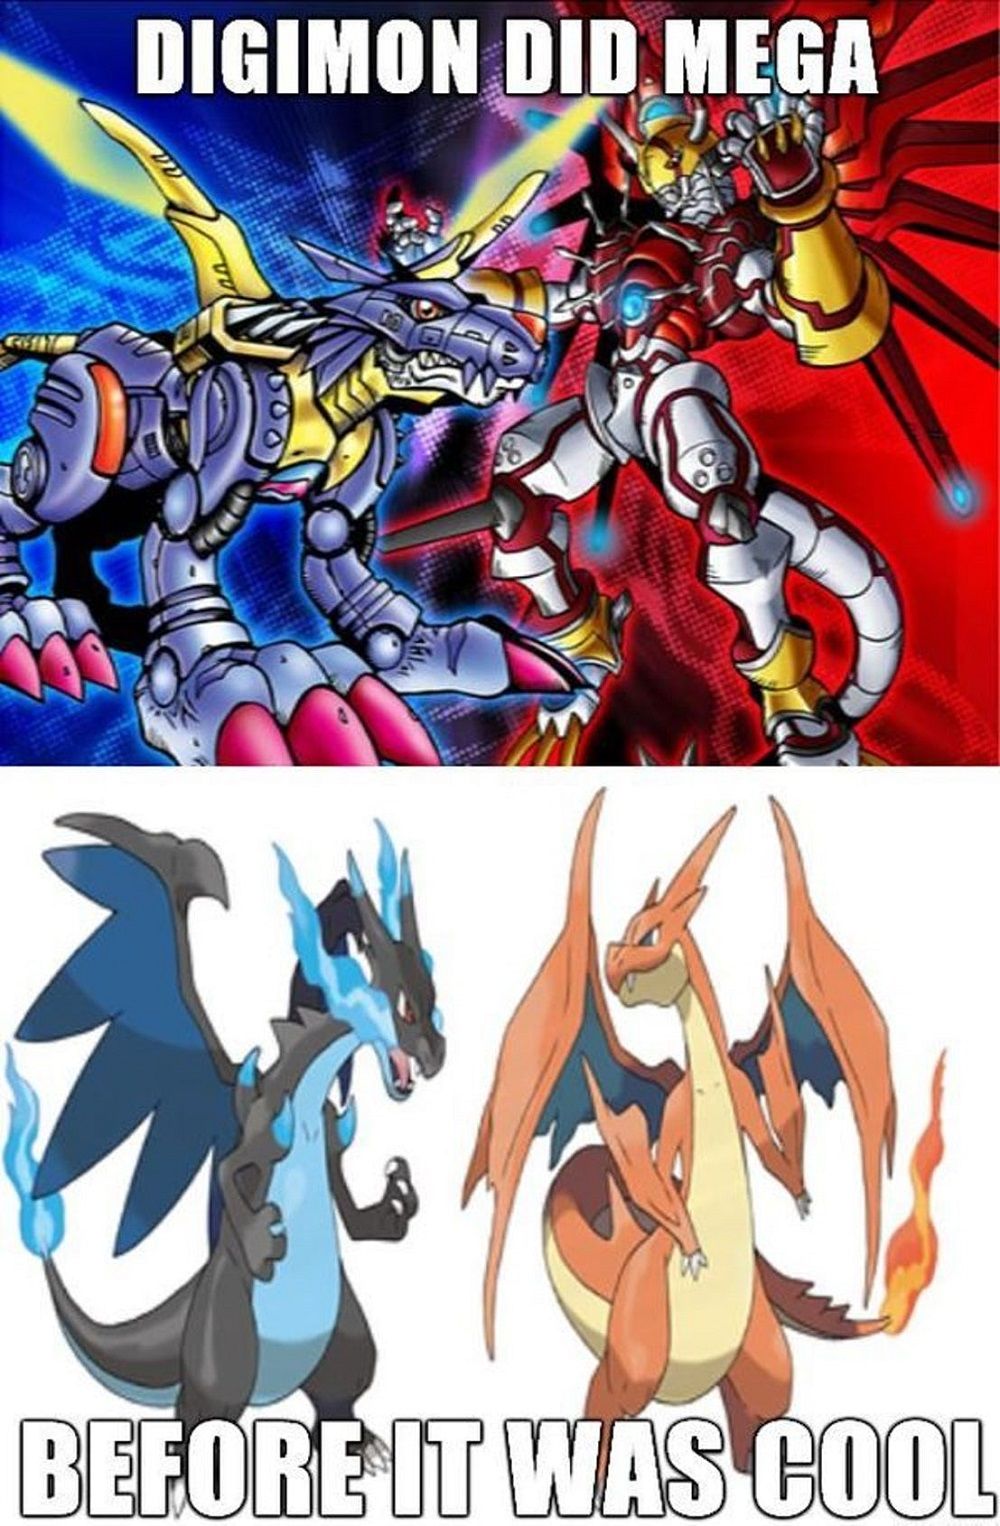 15 Hilarious Pokemon Vs Digimon Memes